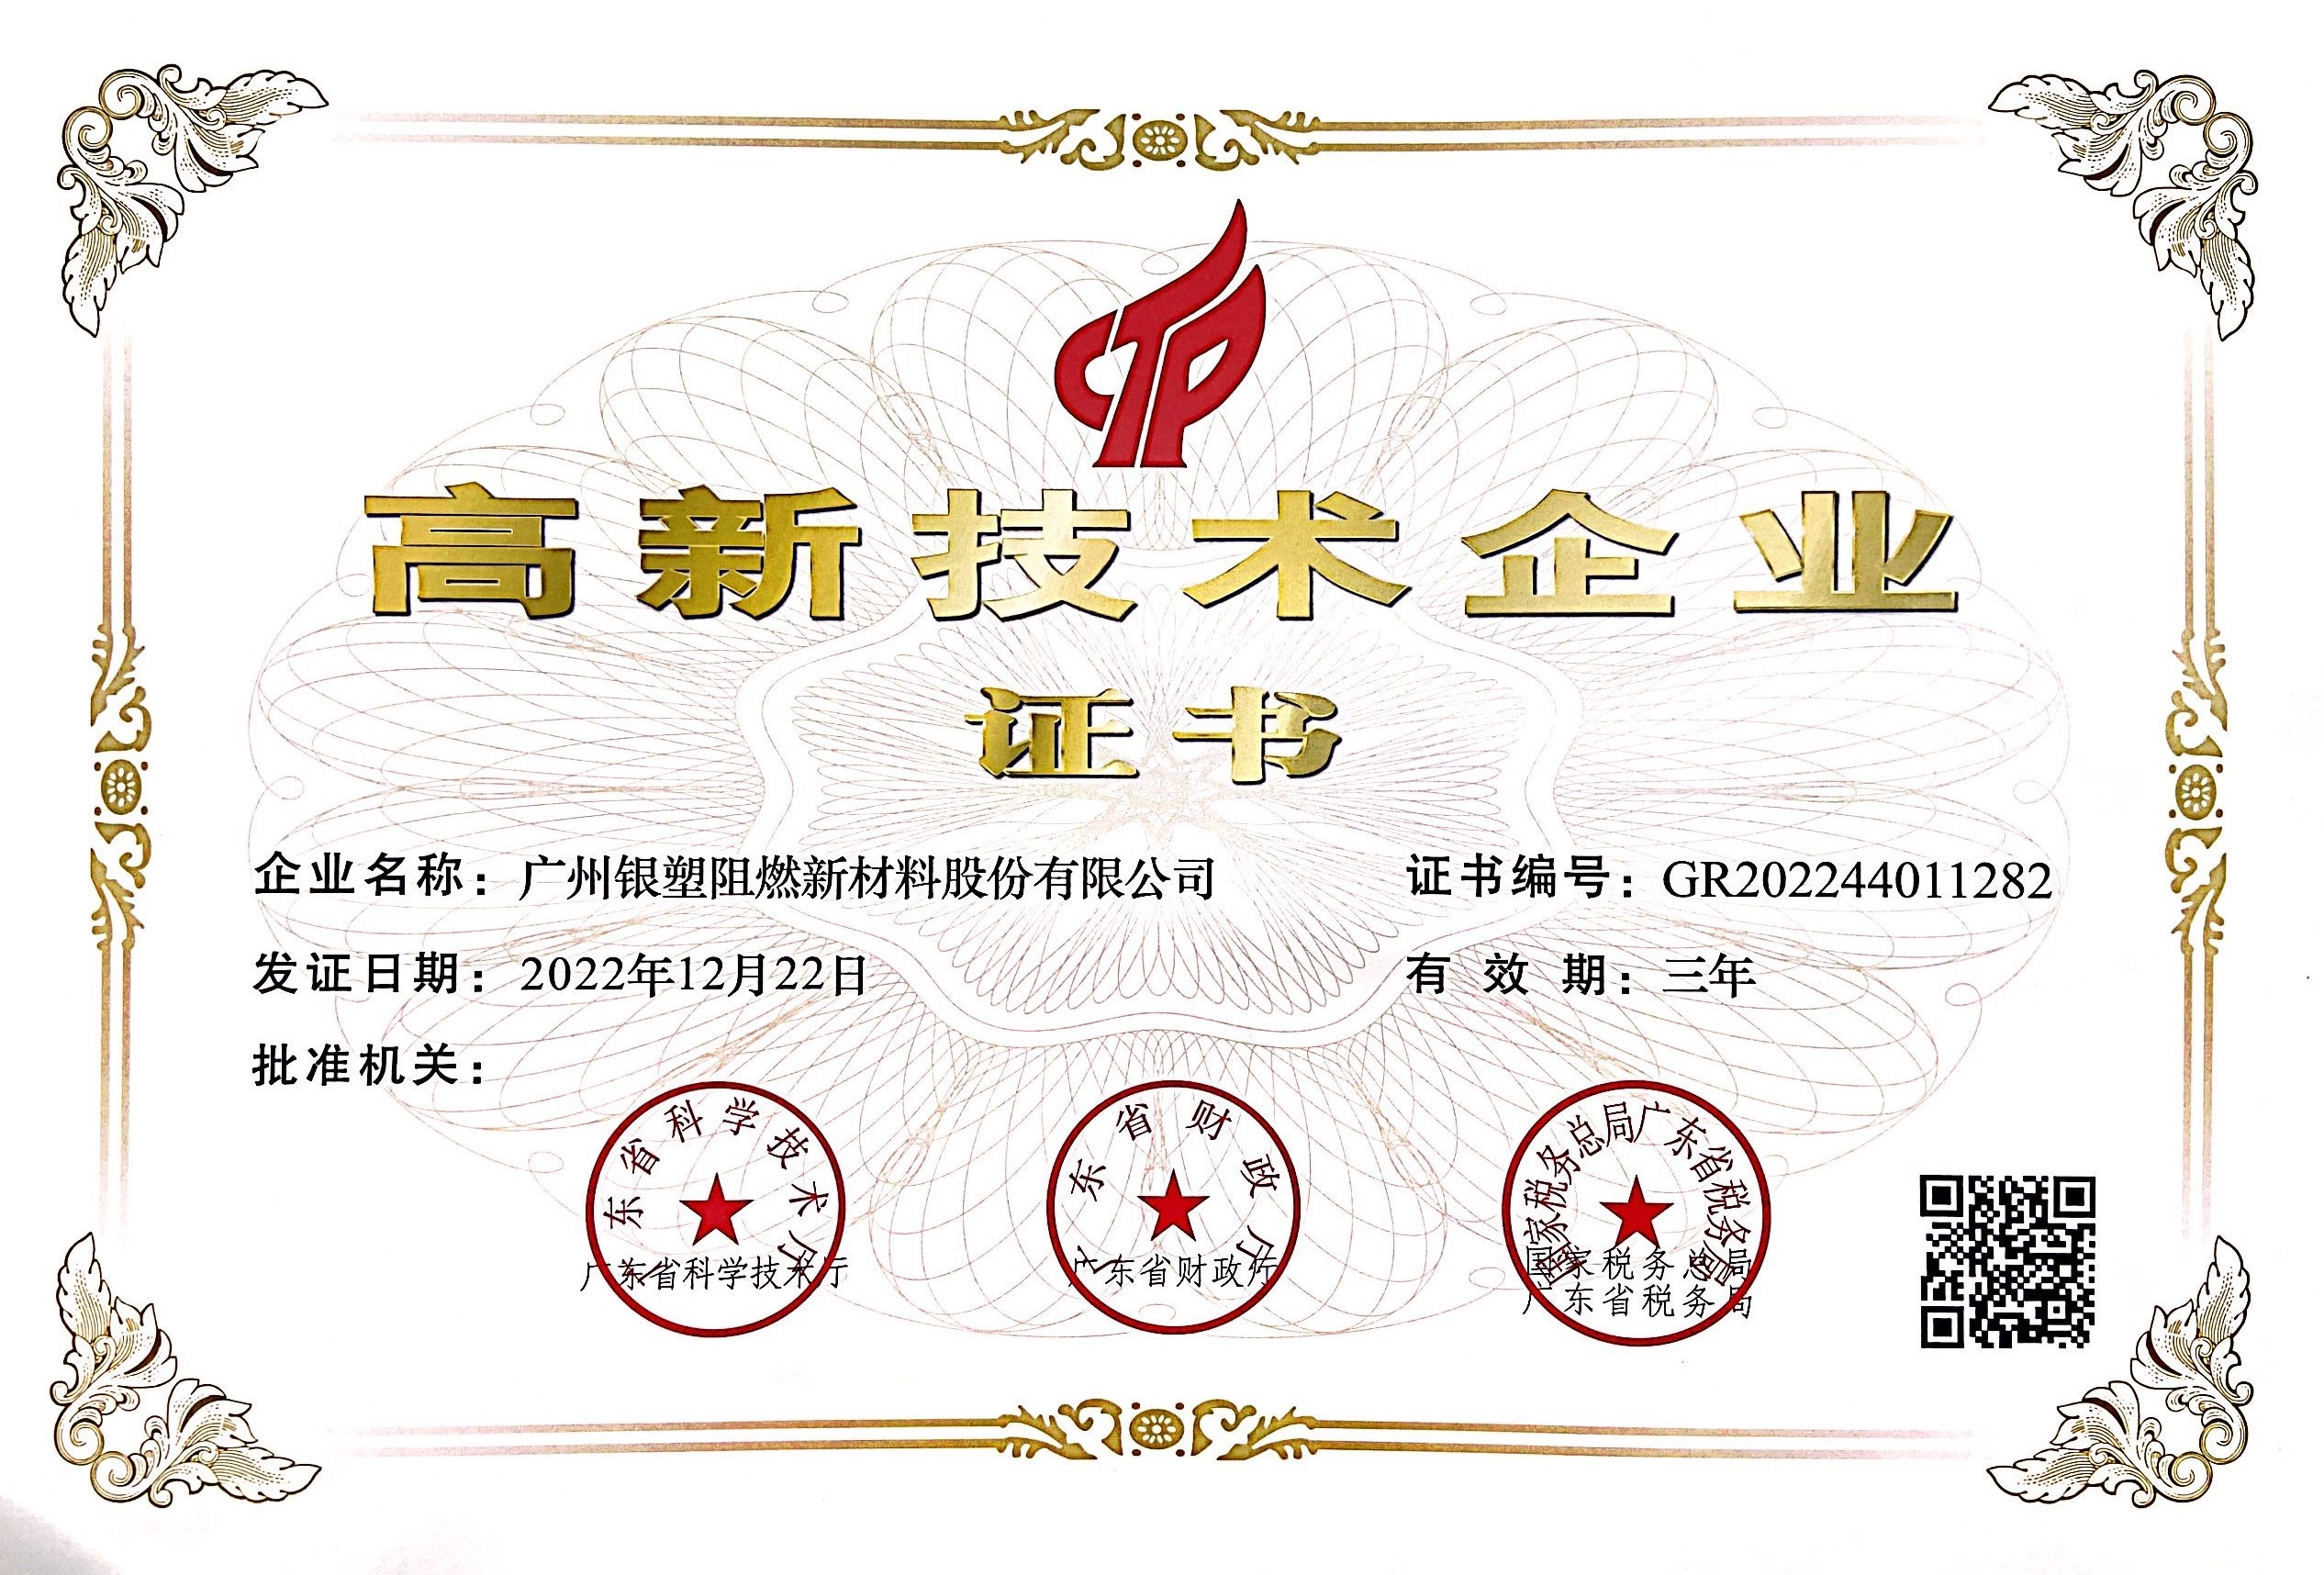 Хорошие новости - Yinsu Flame Retardant снова удостоен звания «Национальное высокотехнологичное предприятие»